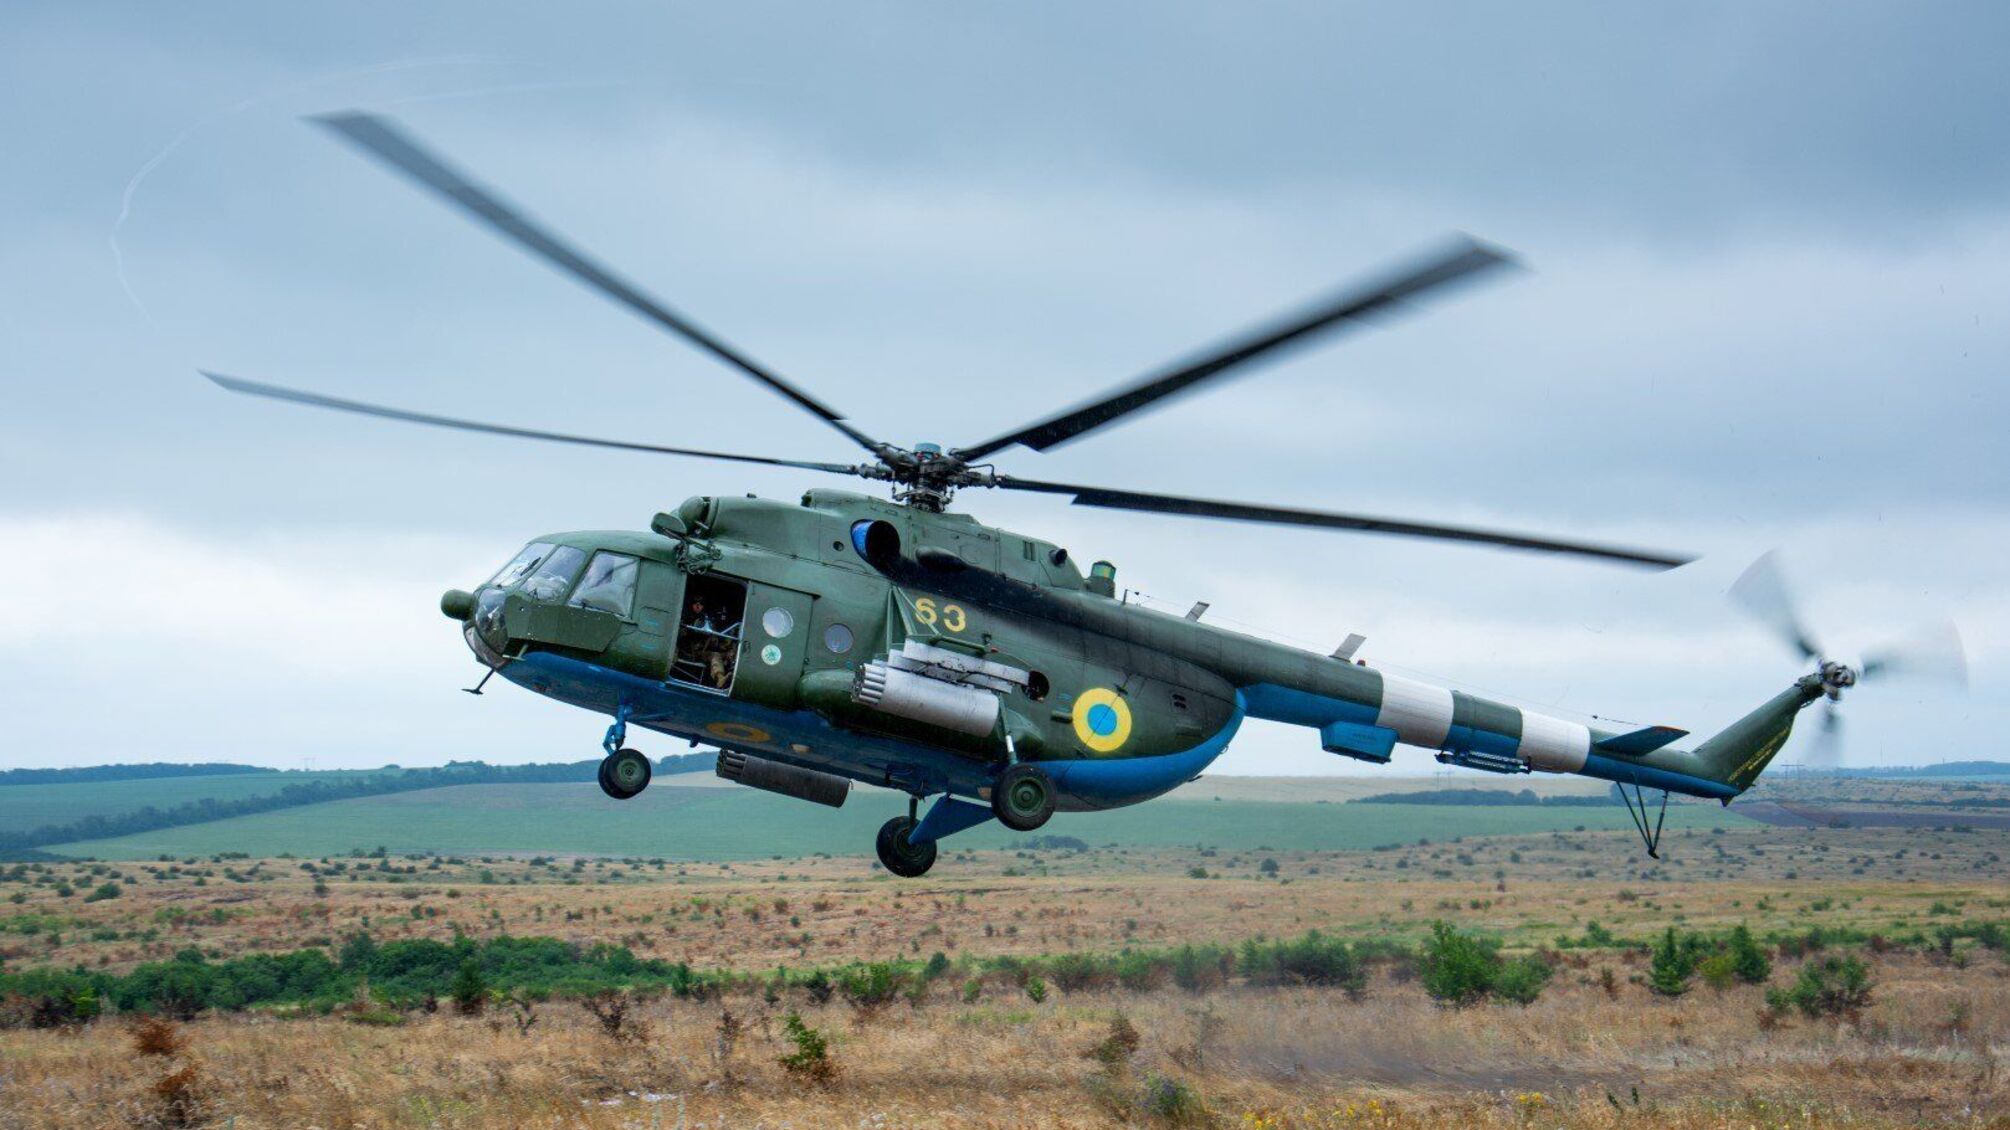 На Донеччині за невідомих обставин впали два військові вертольоти: шестеро українських пілотів загинули, – ЗМІ